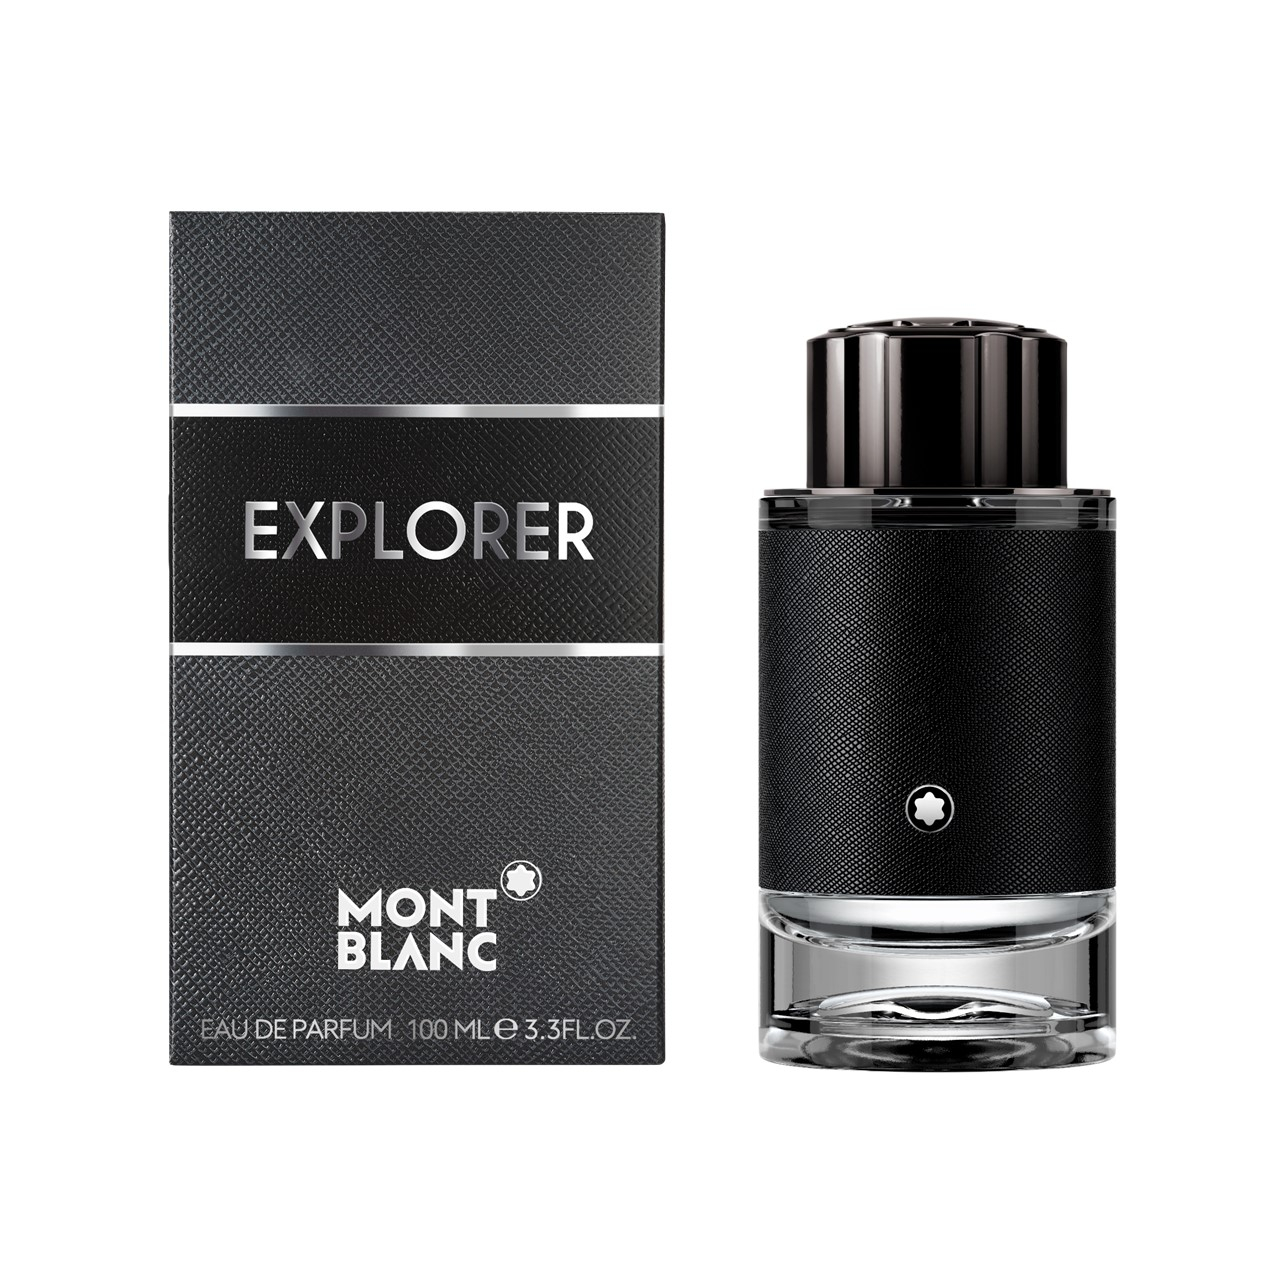 Buy Montblanc de Explorer USA Parfum Eau ·